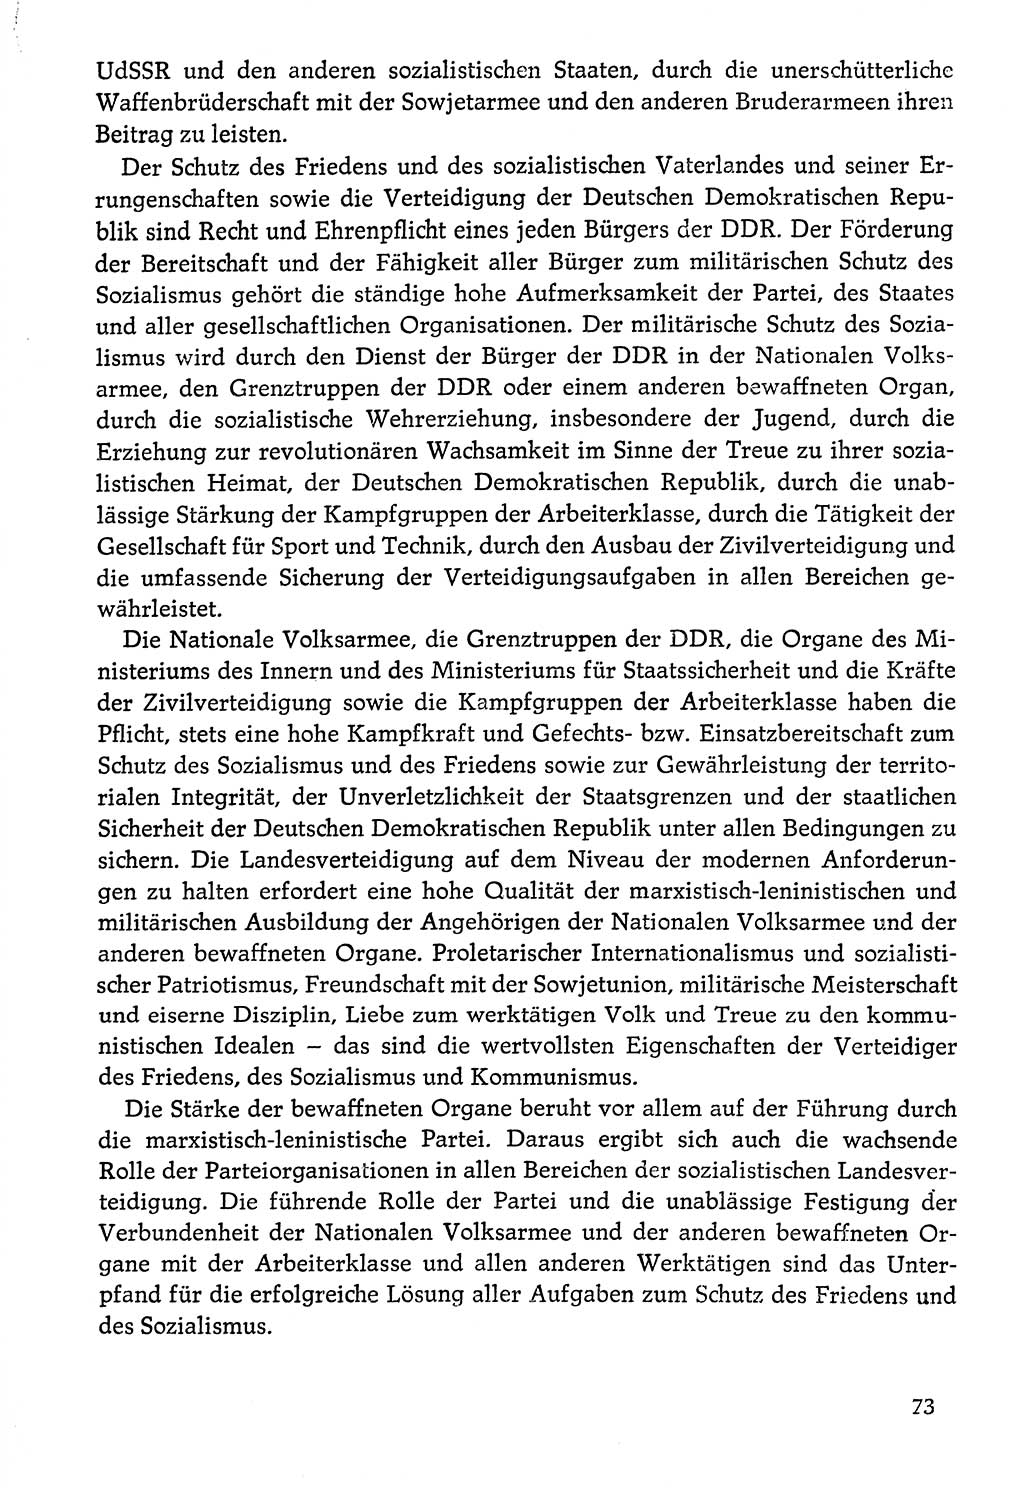 Dokumente der Sozialistischen Einheitspartei Deutschlands (SED) [Deutsche Demokratische Republik (DDR)] 1976-1977, Seite 73 (Dok. SED DDR 1976-1977, S. 73)